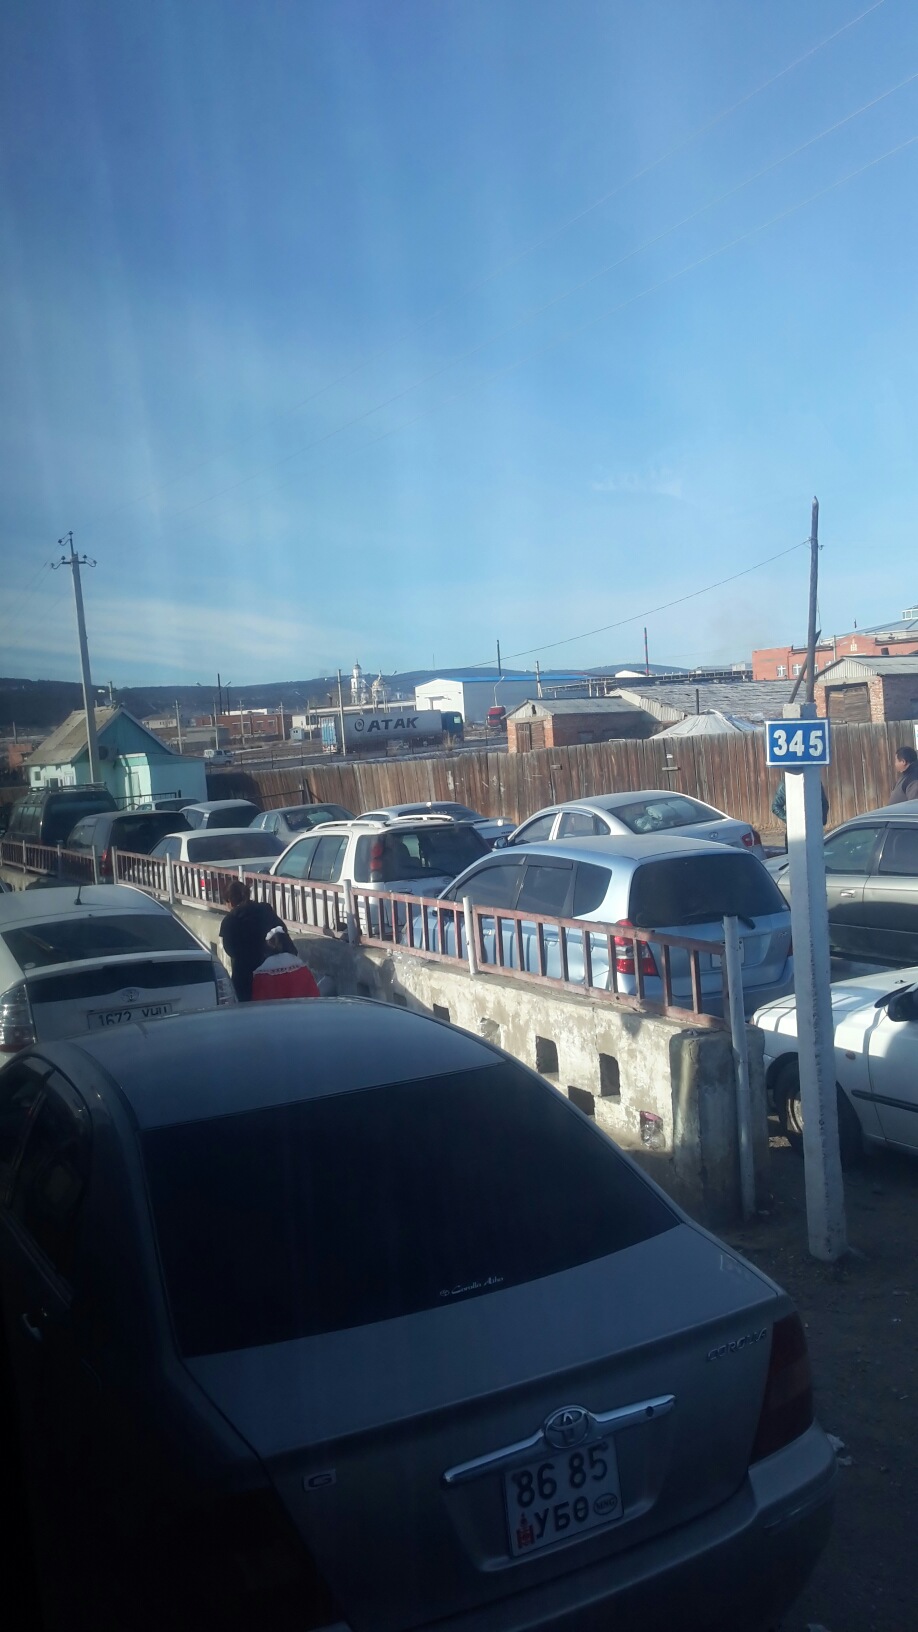 Безвизовый режим возобновился сегодня между Россией и Монголией, Фото с места события собственное